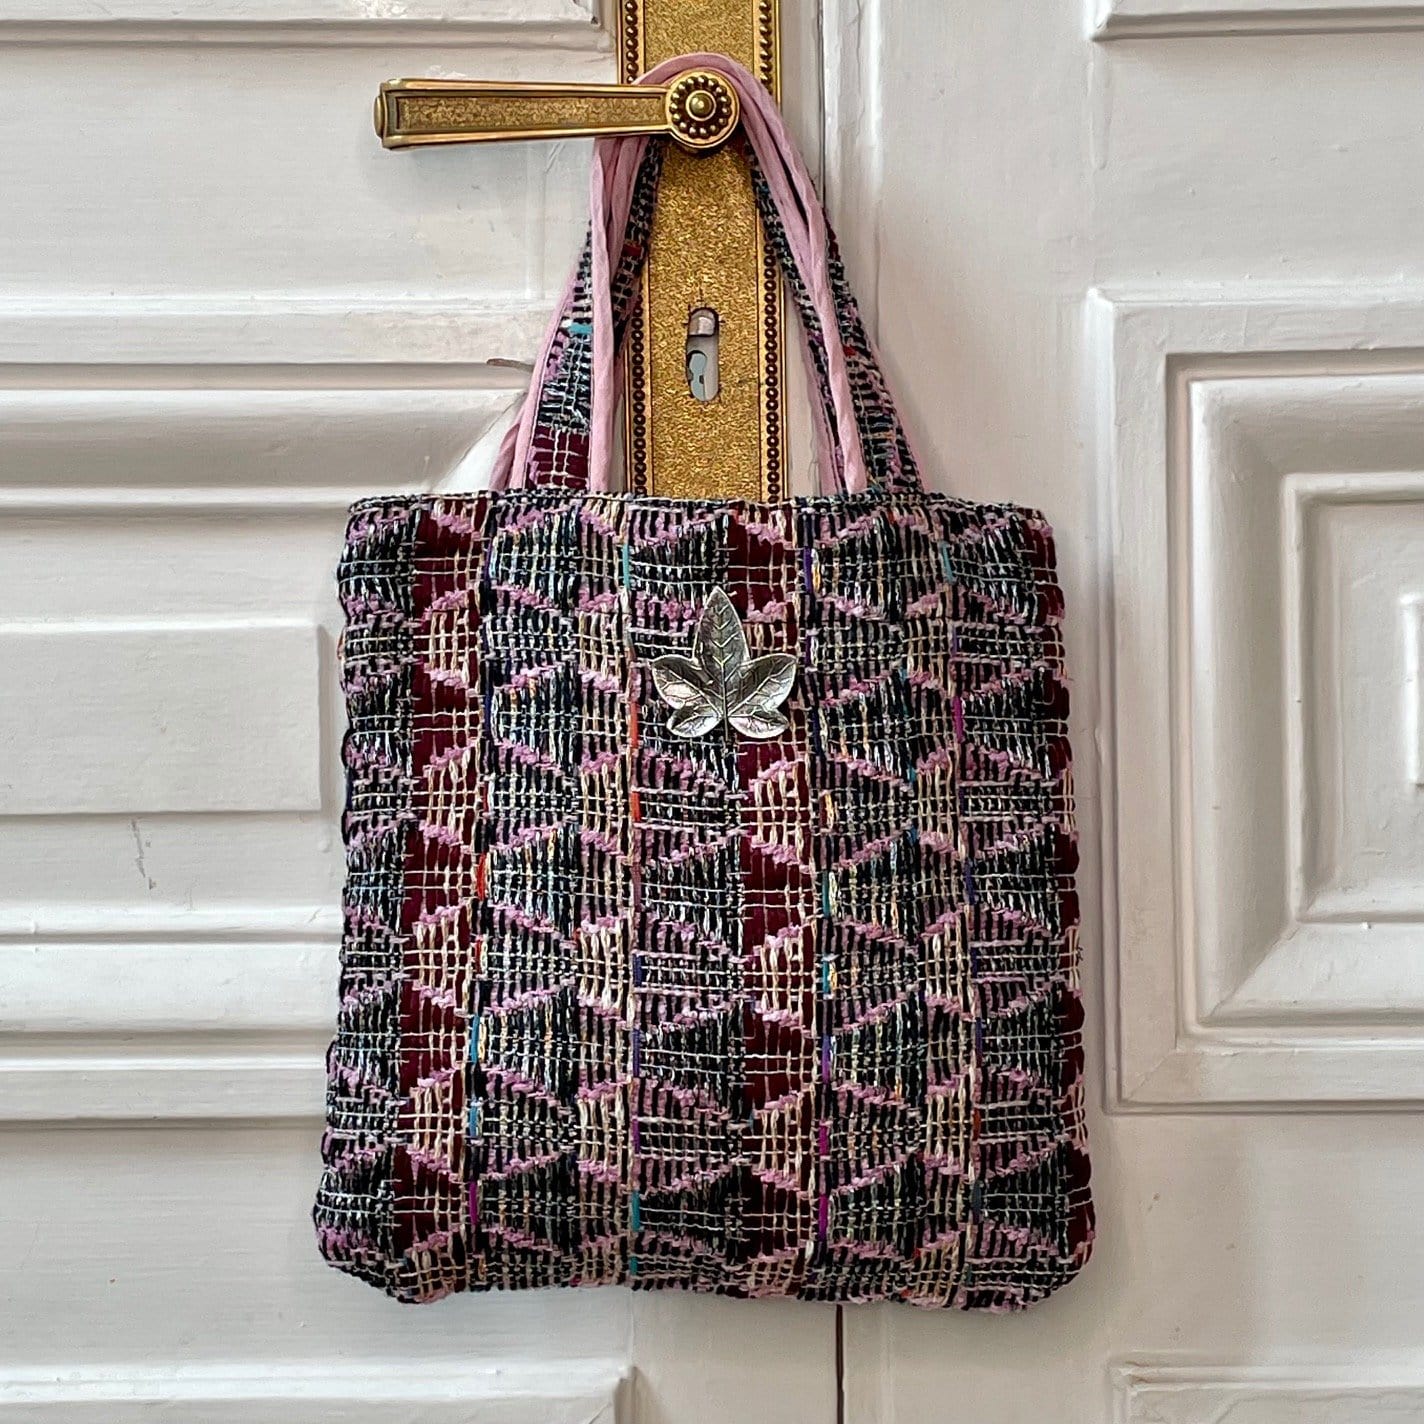 Mini sac Bienvenue en tweed lilas, rose et marine tissé et fabriqué en France